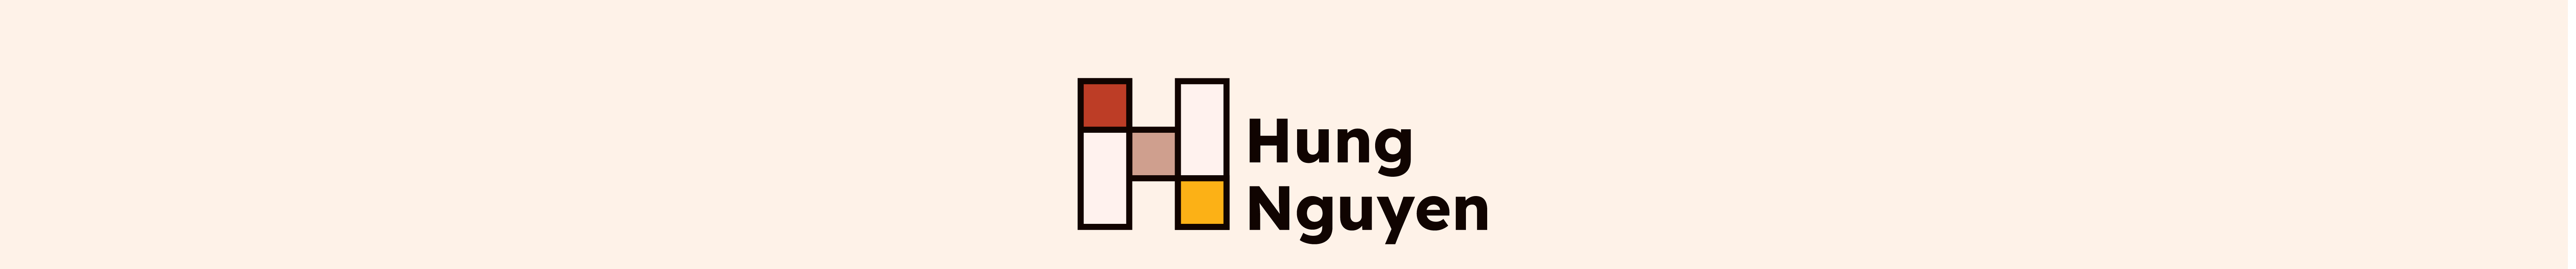 Hung Nguyen (Leo)s profilbanner